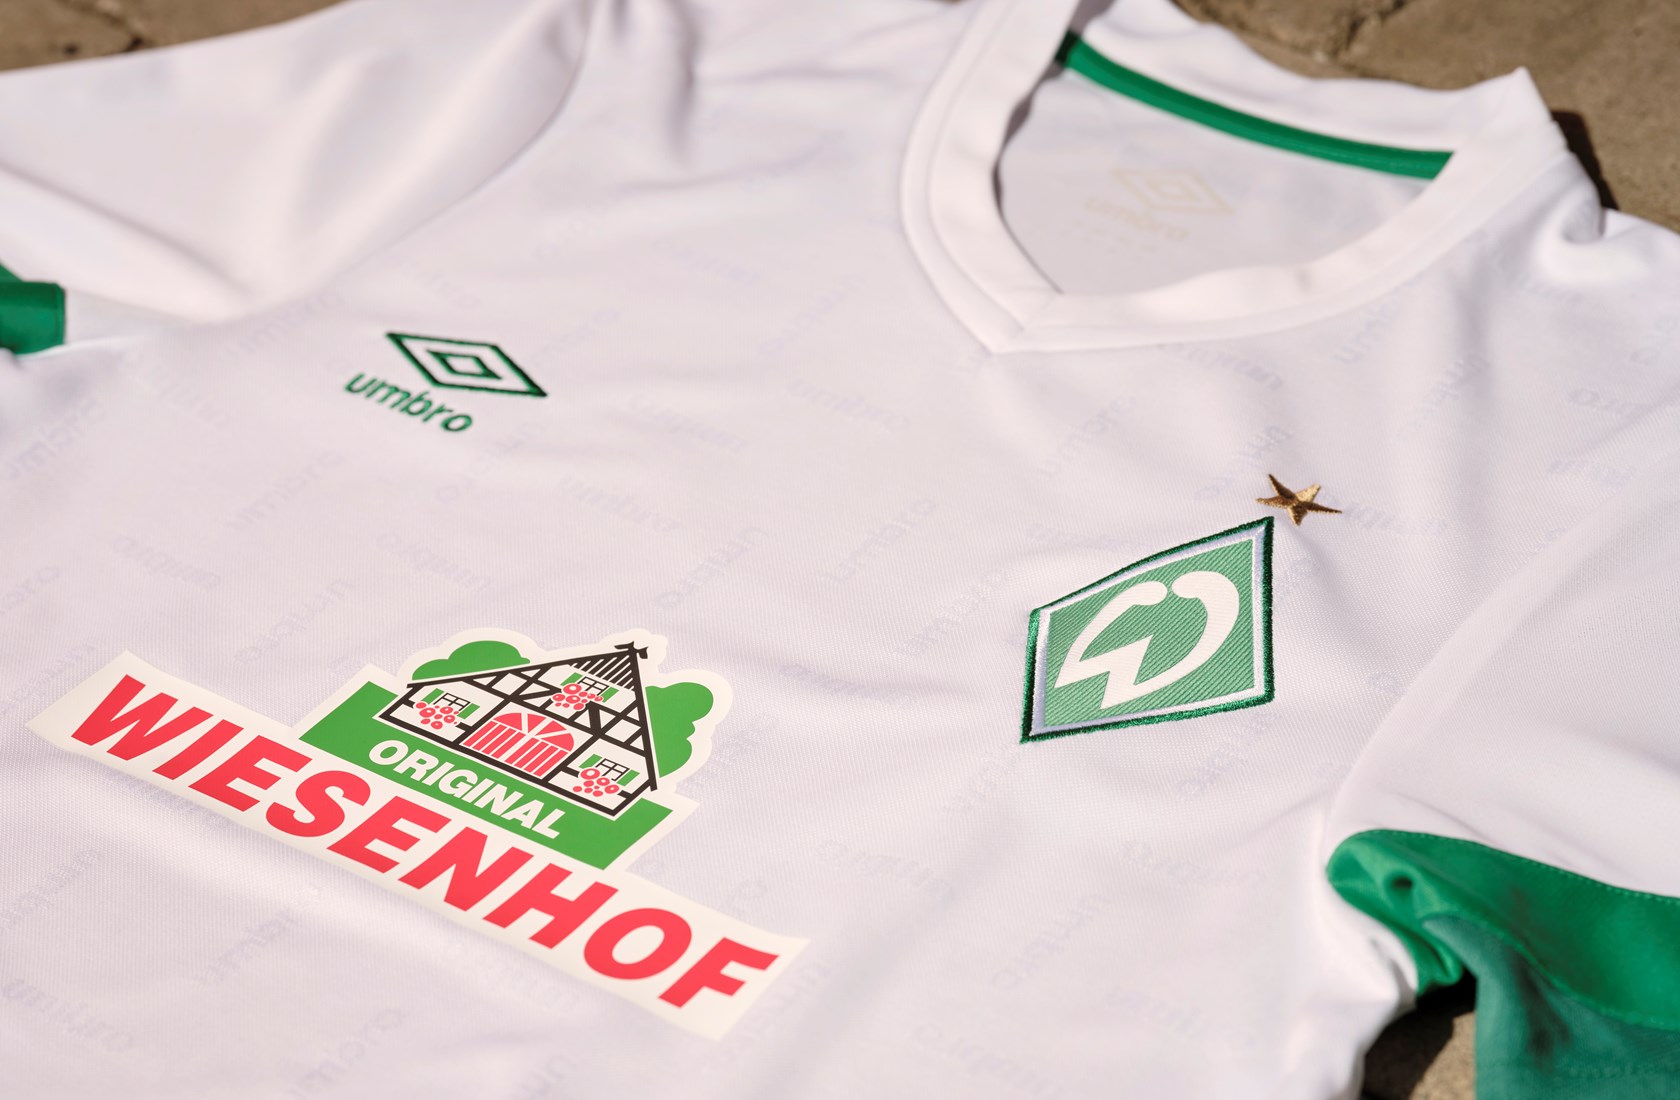 SV Werder Bremen 21/22 Away kit